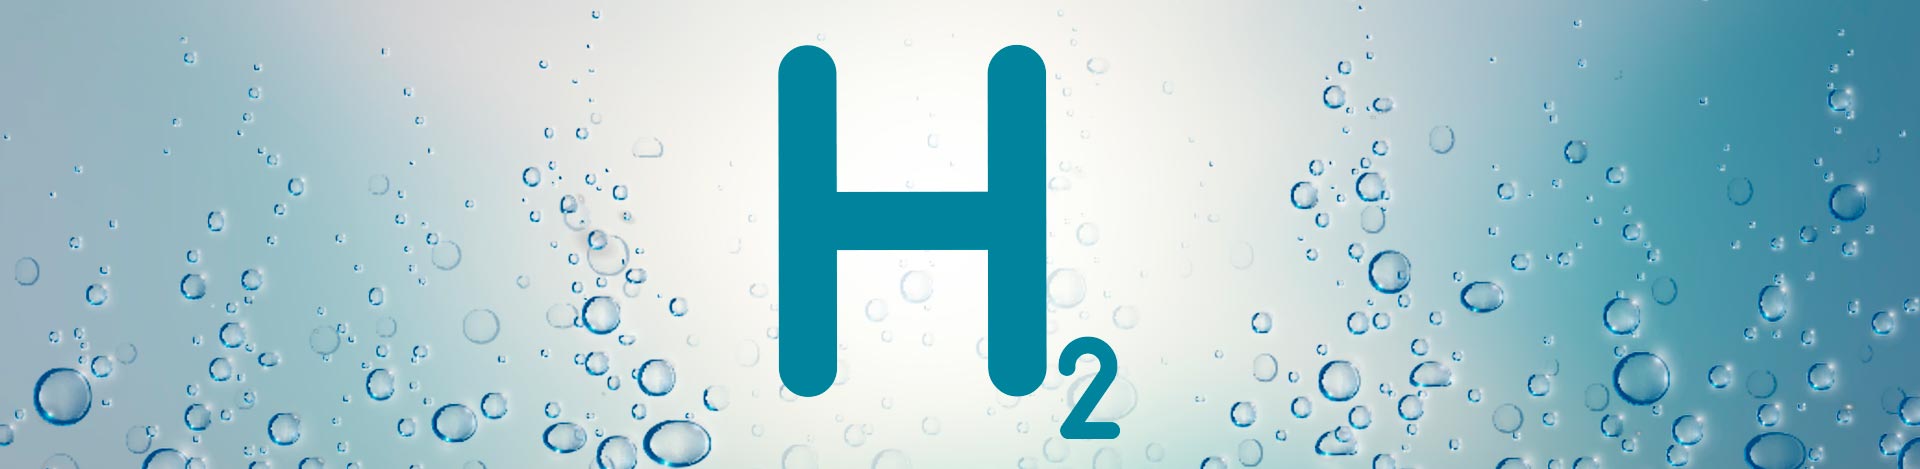 La fabrique de l’hydrogène – Définition et accélération d’une filière